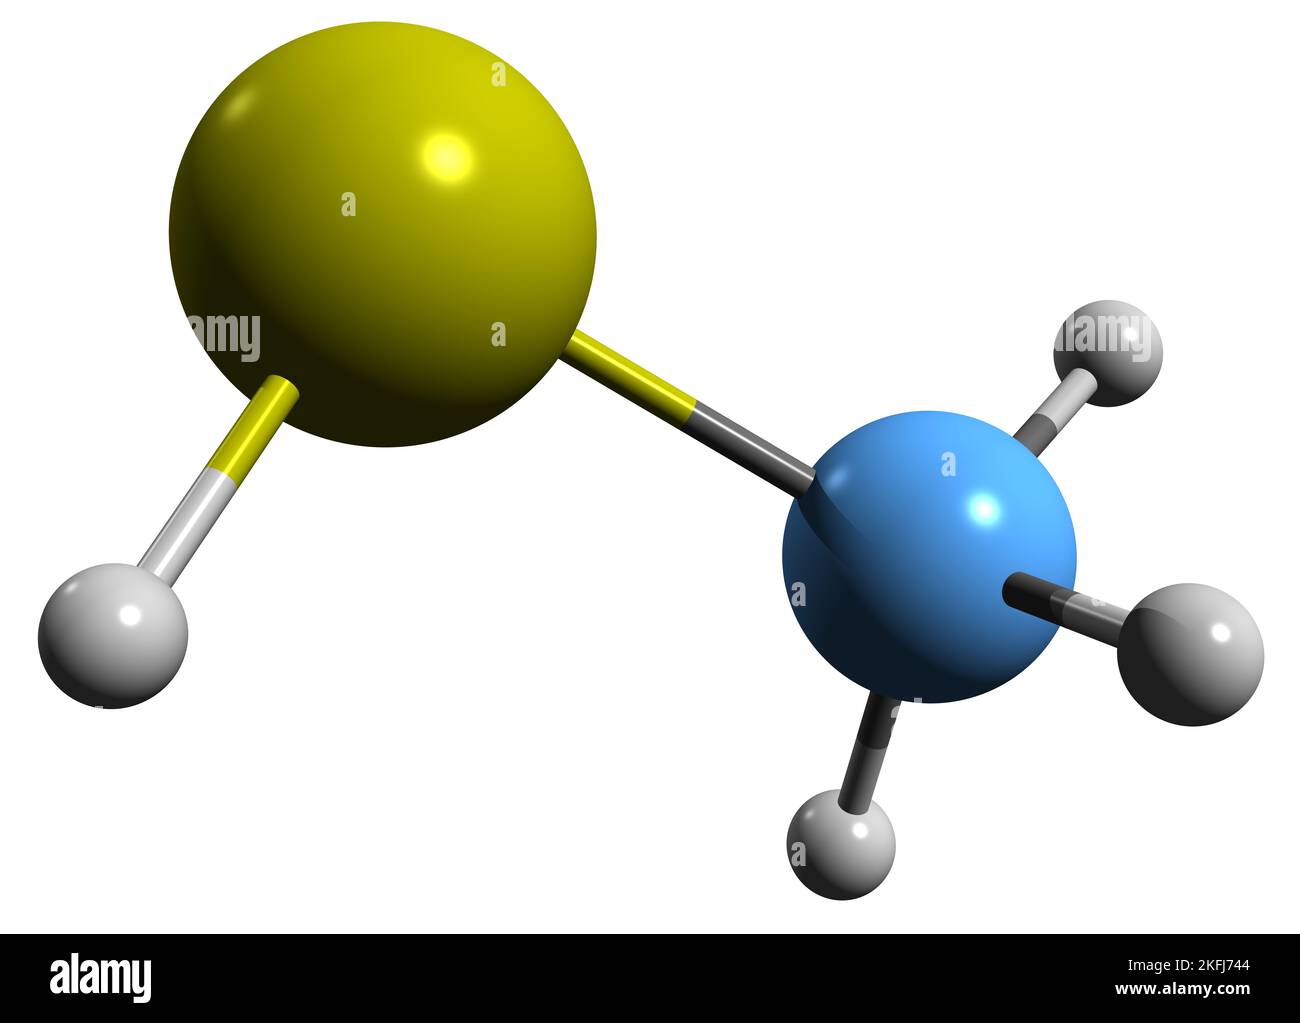 3D Bild der Methanethiol-Skelettformel - molekulare chemische Struktur der organoschwefelhaltigen Verbindung Thiomethyl-Alkohol auf weißem Hintergrund isoliert Stockfoto